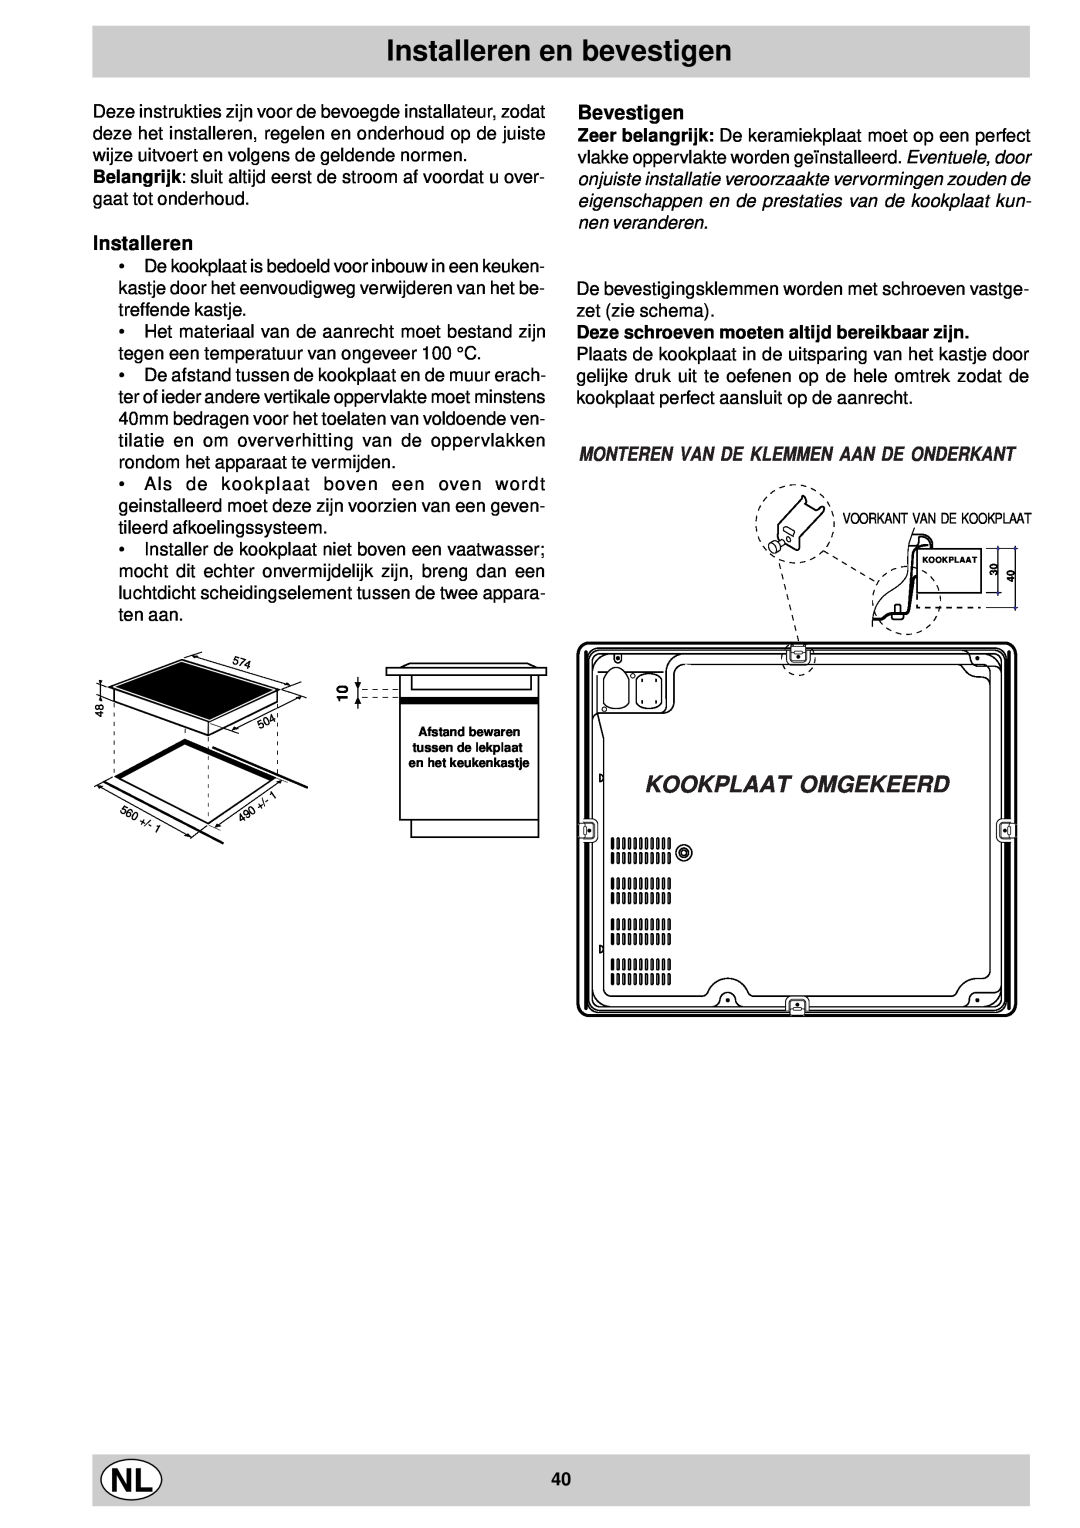 Indesit mk 64 r manual Installeren en bevestigen, Kookplaat Omgekeerd, Bevestigen, Monteren Van De Klemmen Aan De Onderkant 